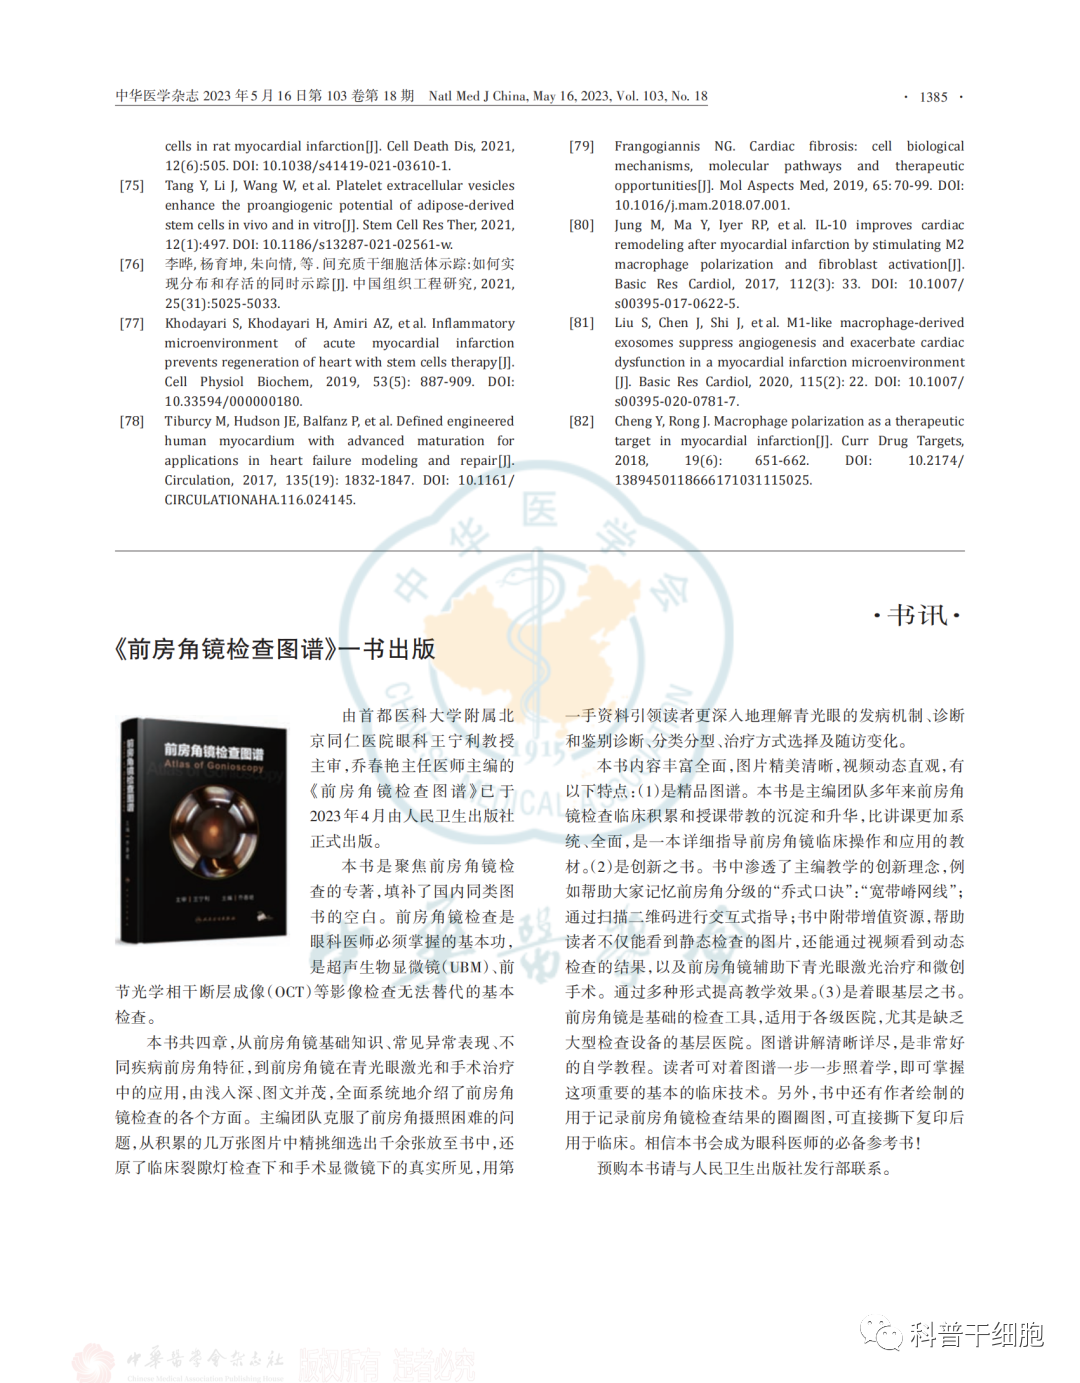 《自体干细胞移植治疗心力衰竭中国专家共识（2022）》发布